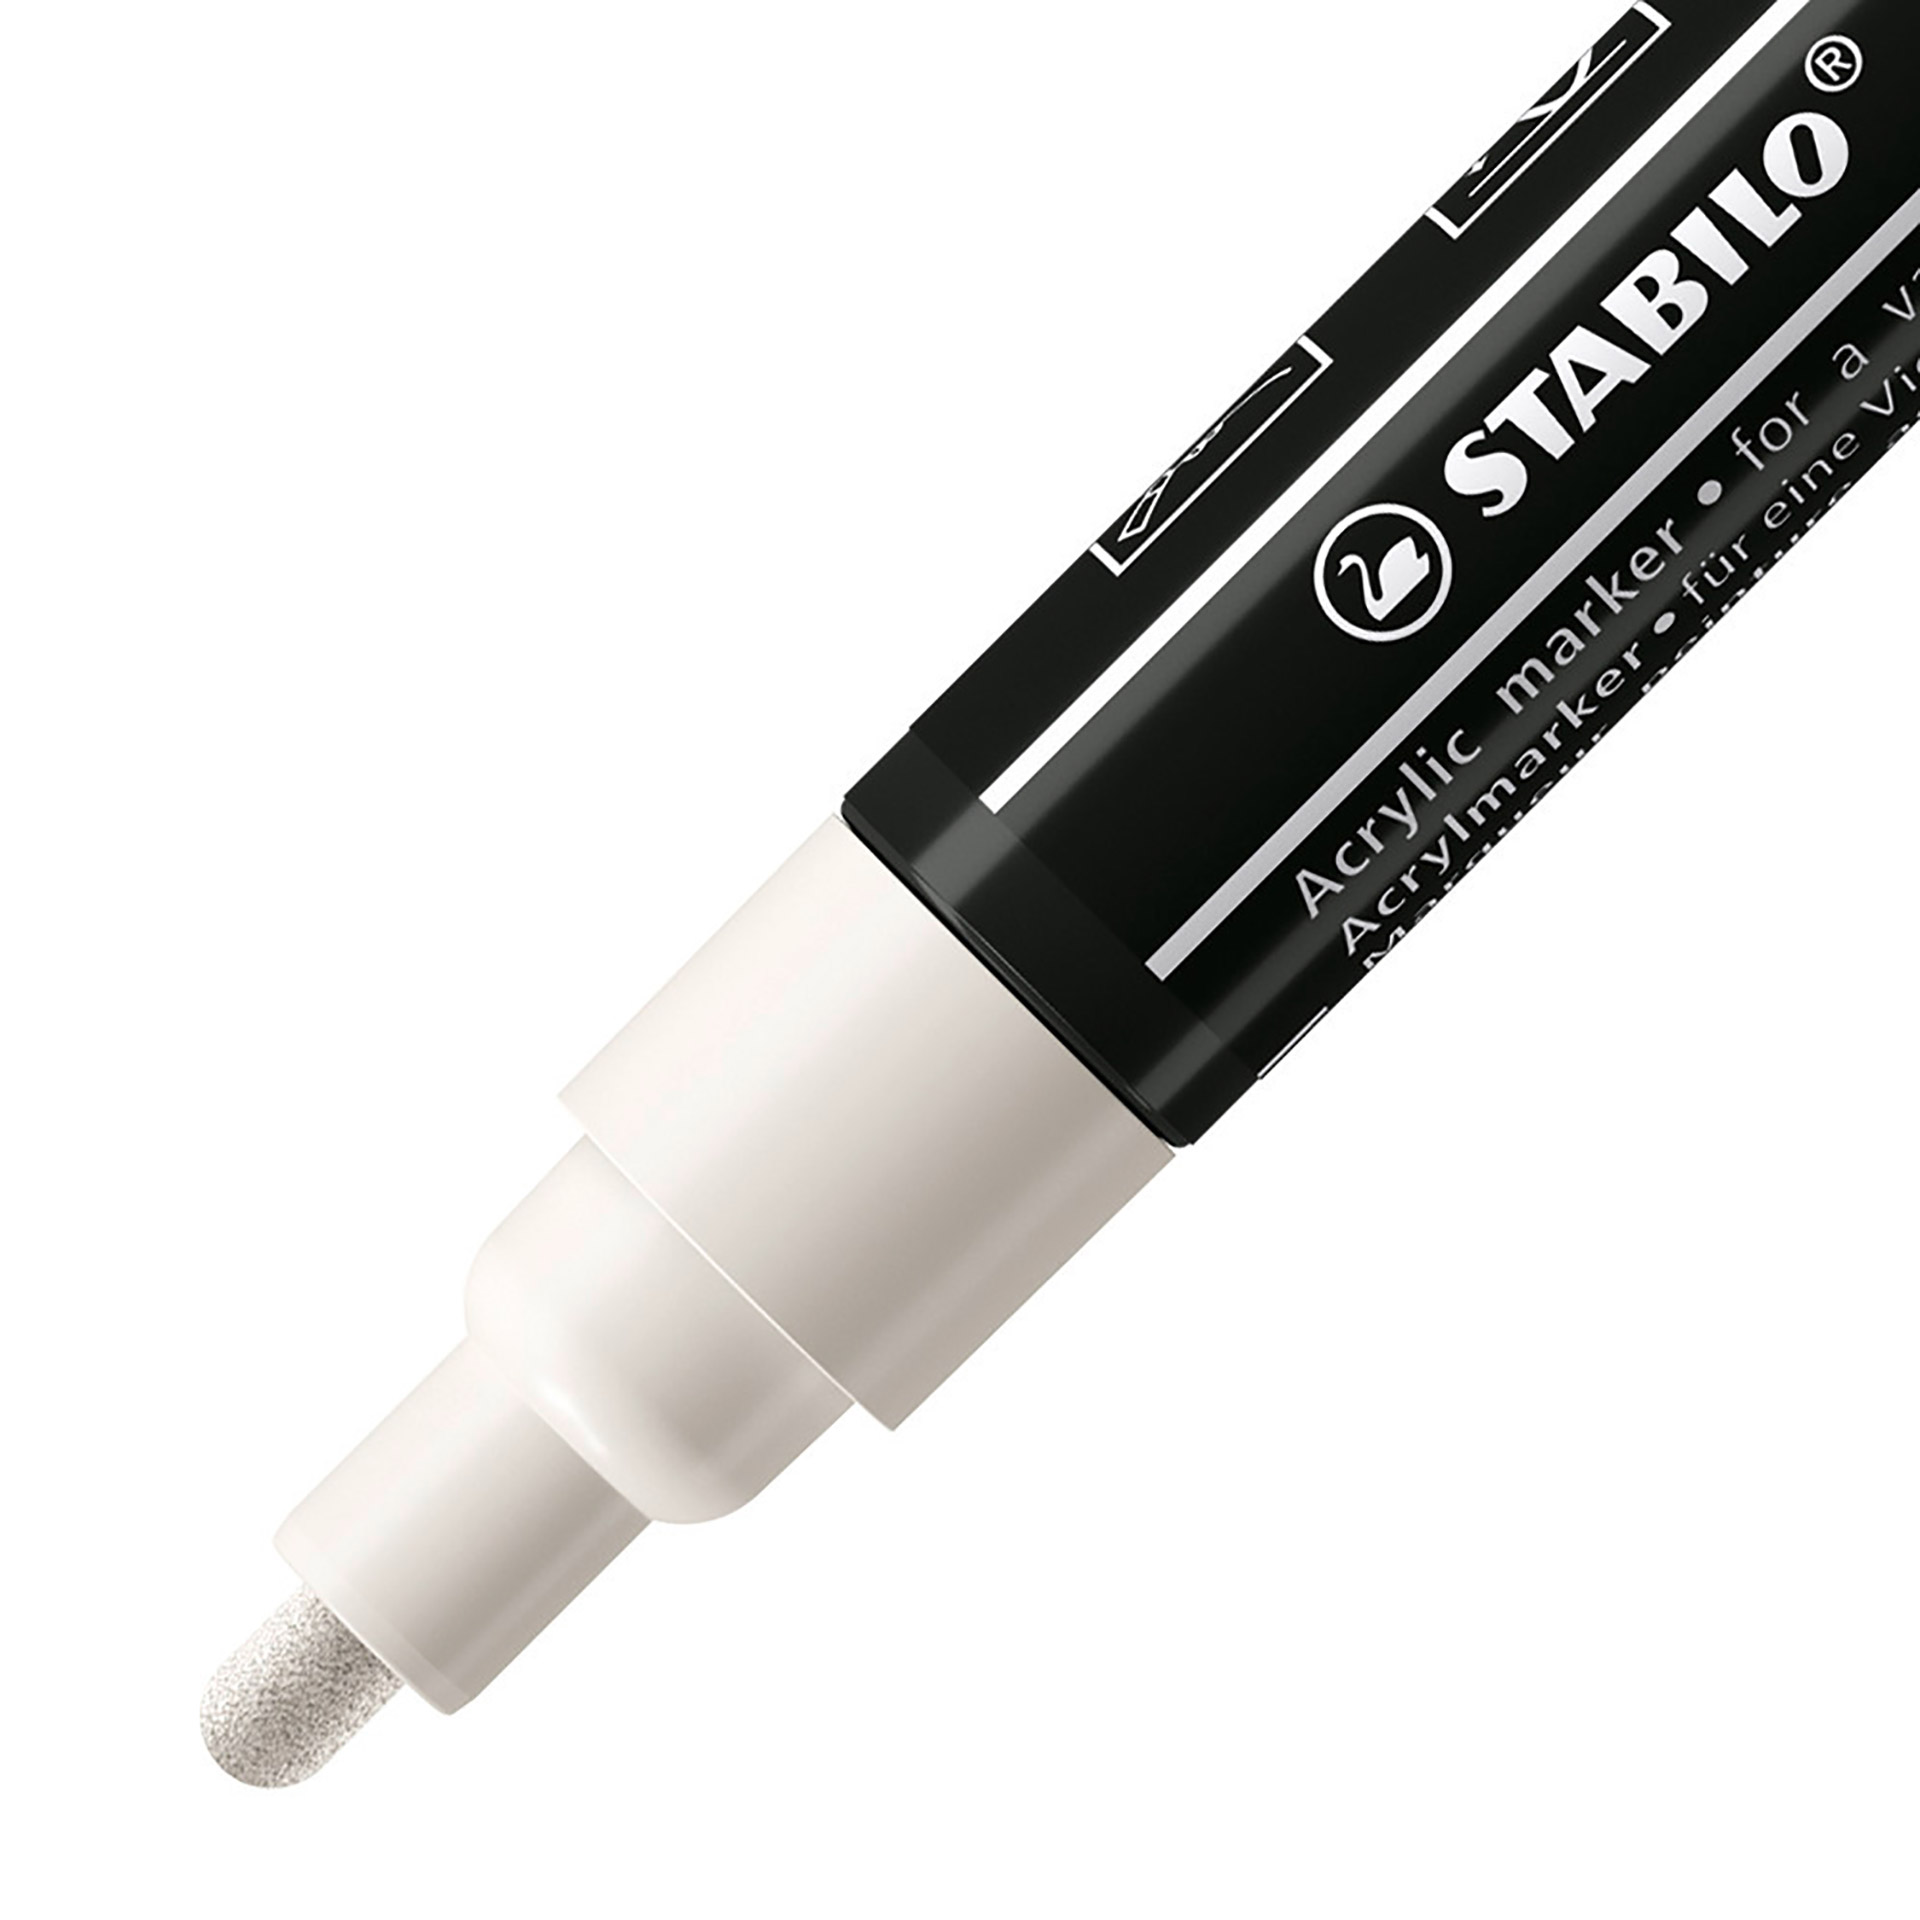 STABILO FREE Acrylic - T300 Punta rotonda 2-3mm - Confezione da 5 - Bianco, , large